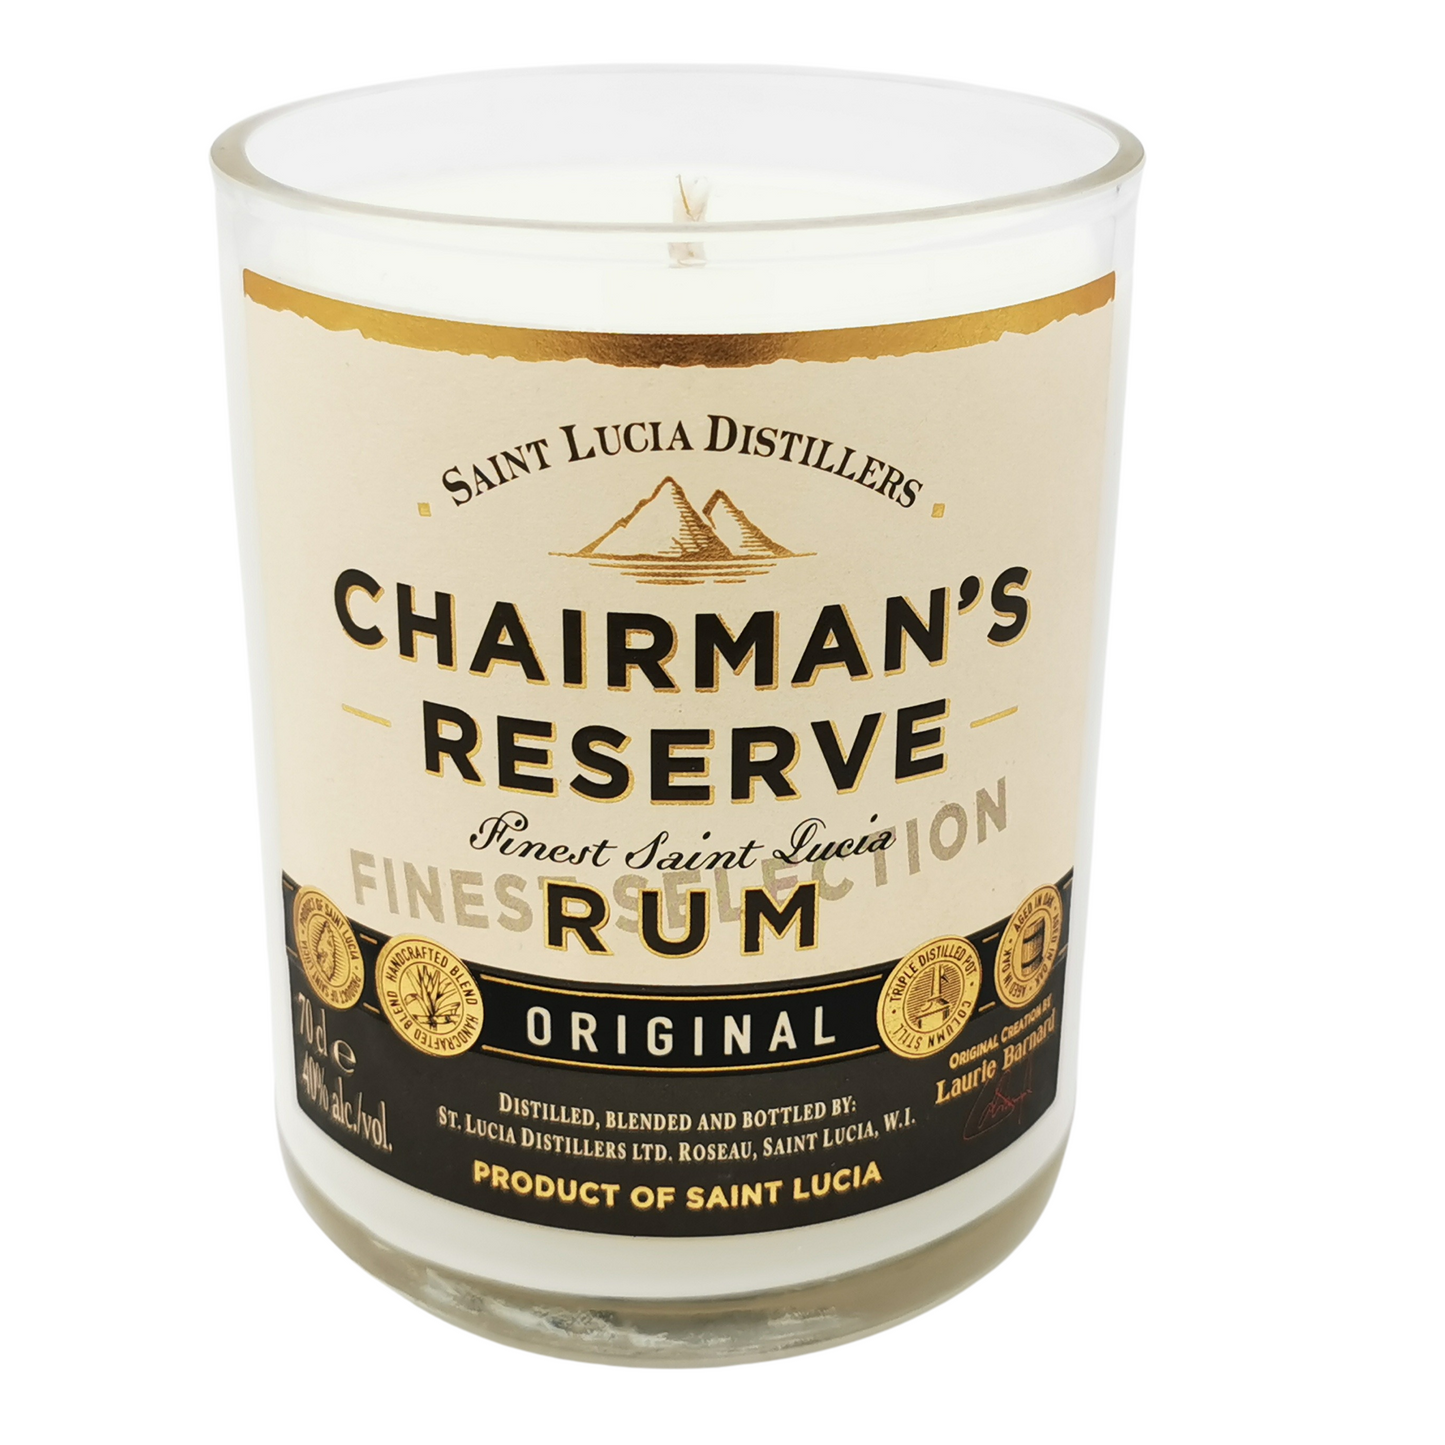 Chairmans Reserve Dark Rum Bottle Candle Rum Bottle Candles Adhock Homeware